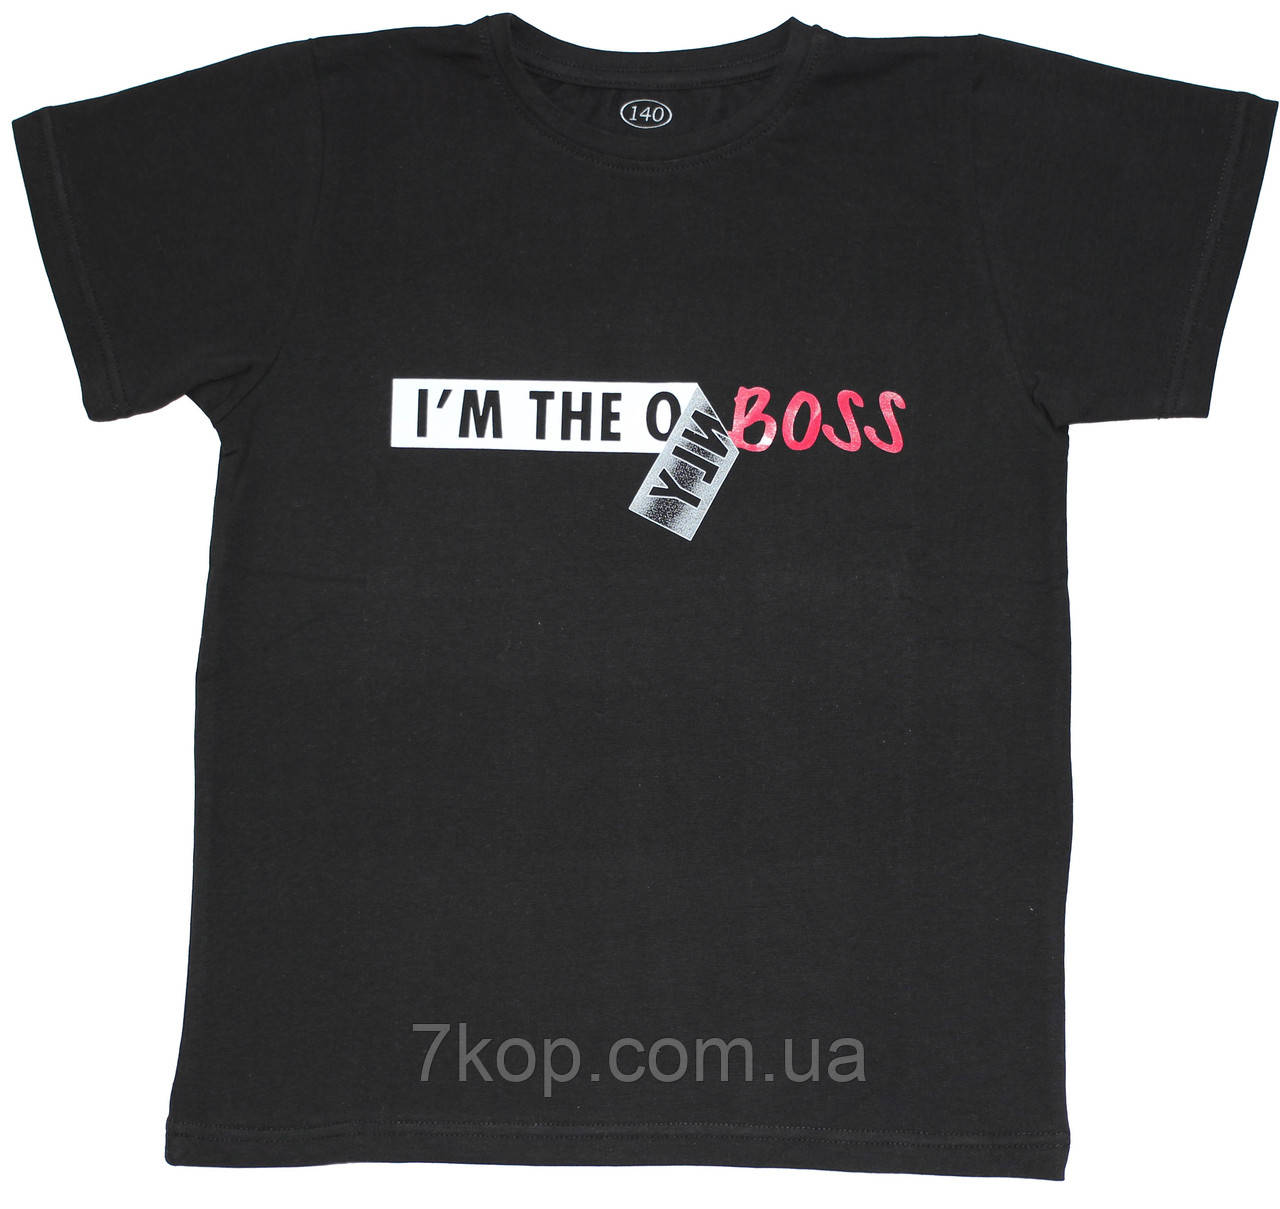 Чорна футболка для хлопчика i'm the Boss, зріст 146 см, 158 см, 164 см, Фламінго